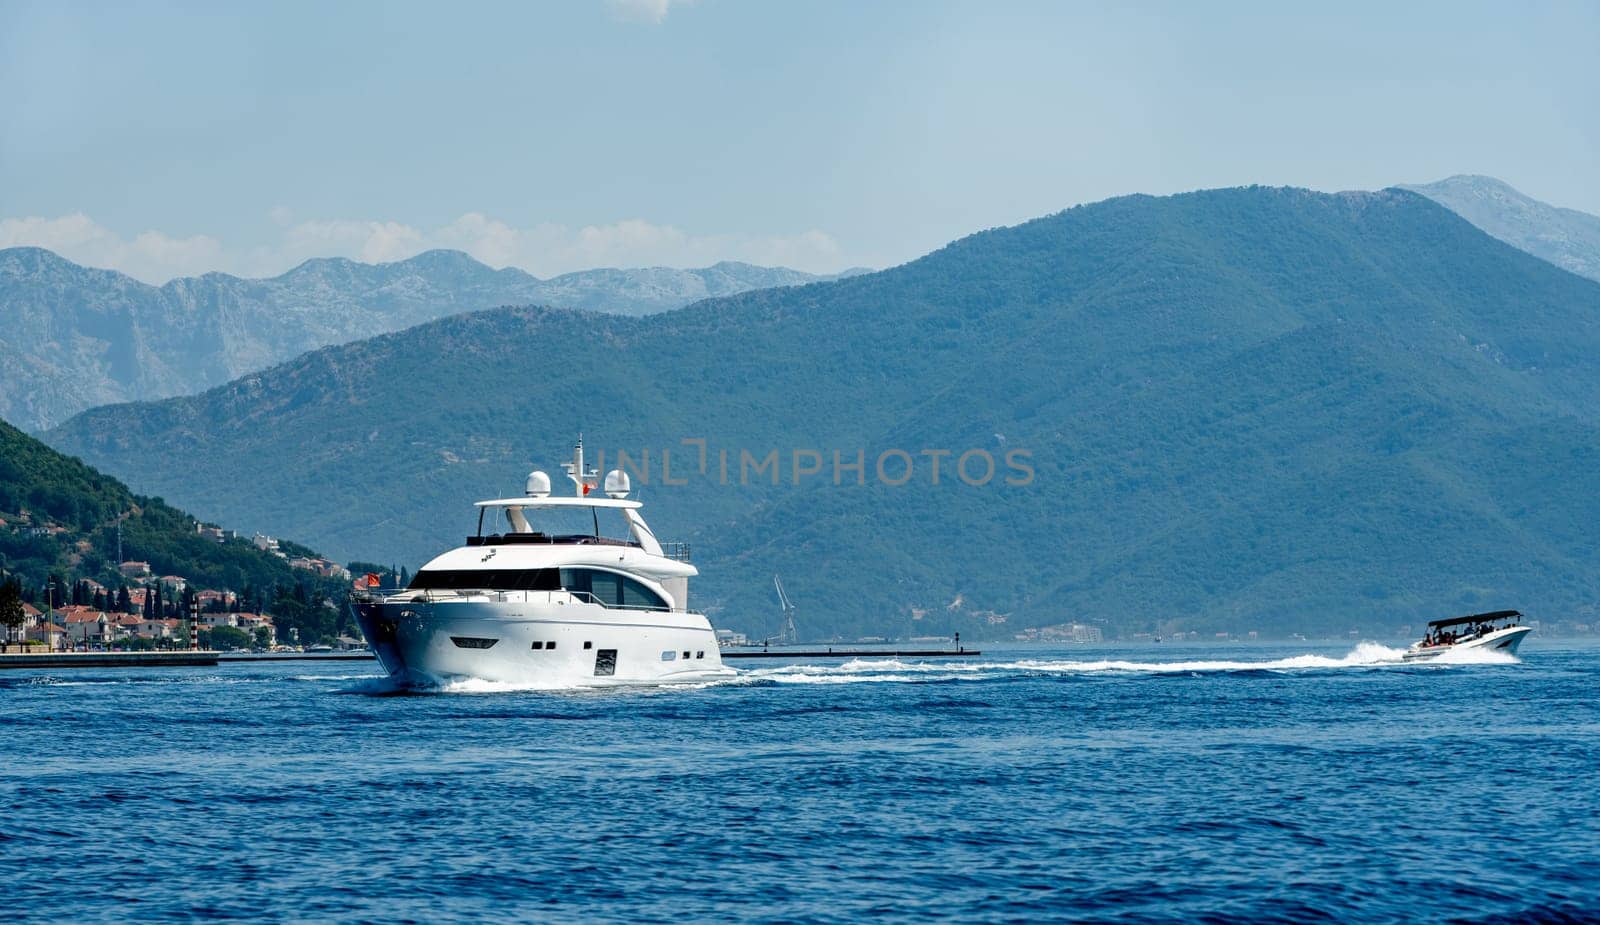 Boat in Adriatic sea in Montenegro by GekaSkr